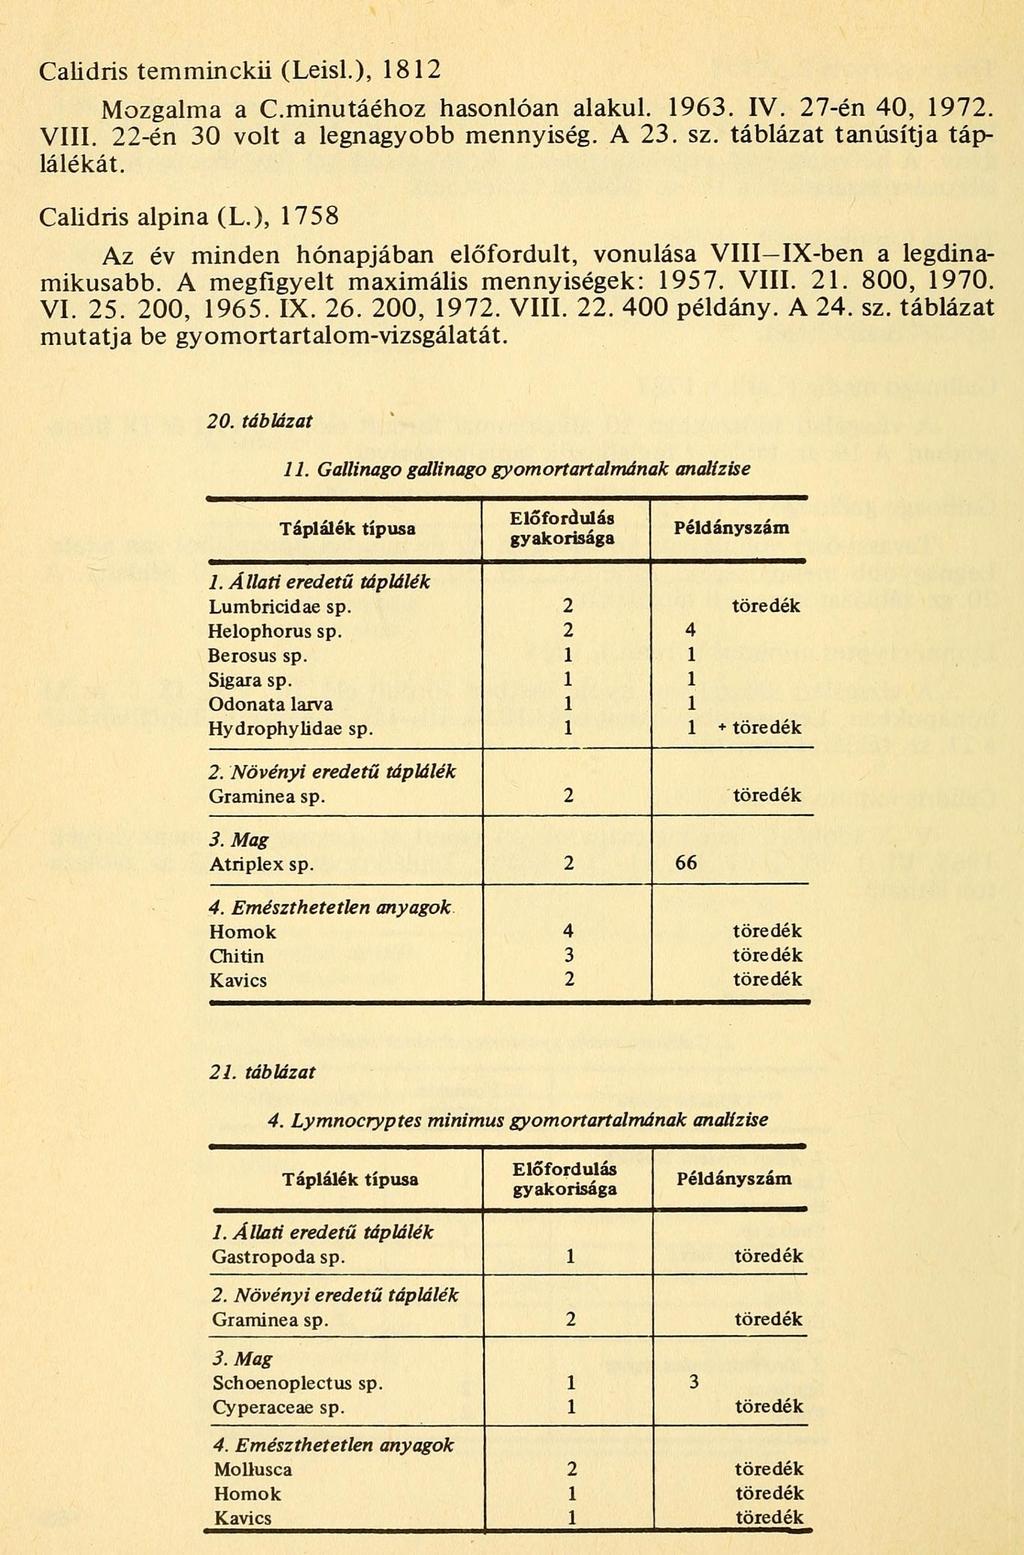 Calidris temminckii (Leisl.), 8 Mozgalma a C.minutáéhoz hasonlóan alakul. 96. IV. 7-én 0, 97. VIII. -én 0 volt a legnagyobb mennyiség. A. sz. táblázat tanúsítja táplálékát. Calidris alpina (L.